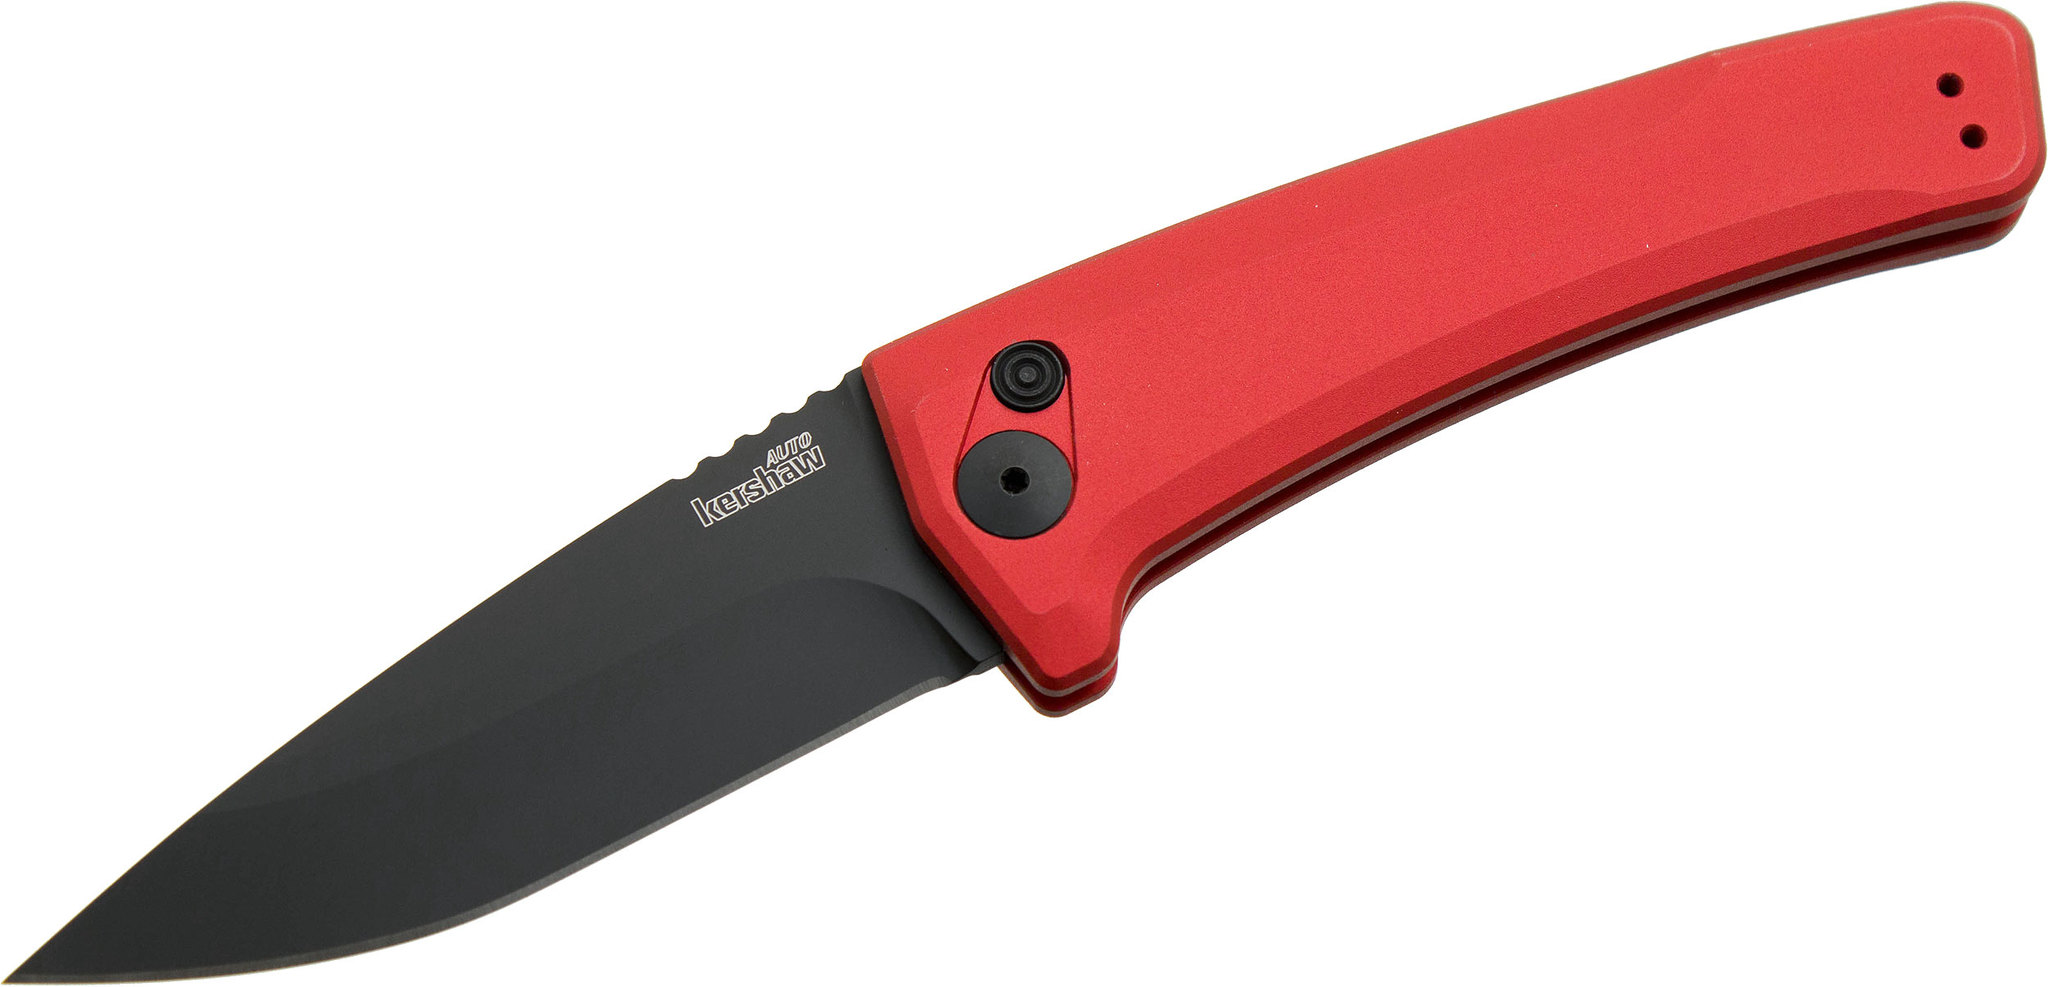 фото Полуавтоматический складной нож launch 3 - kershaw 7300rdblk red, сталь crucible cpm® 154, рукоять анодированный алюминий, красный